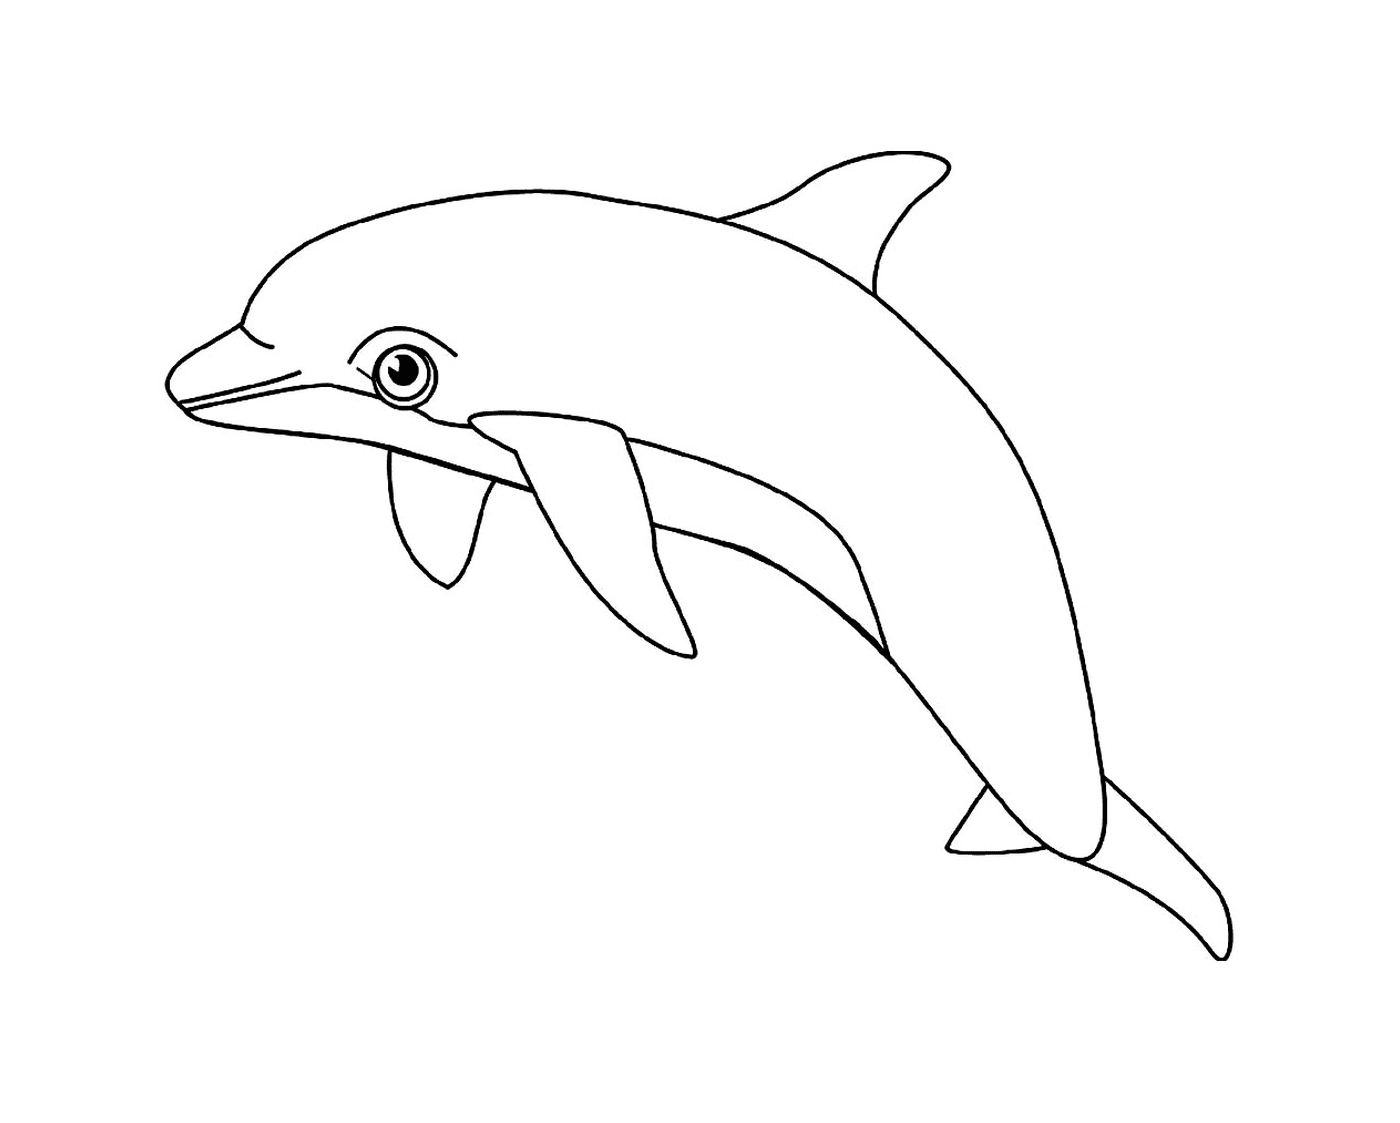  Водородное животное: дельфин 